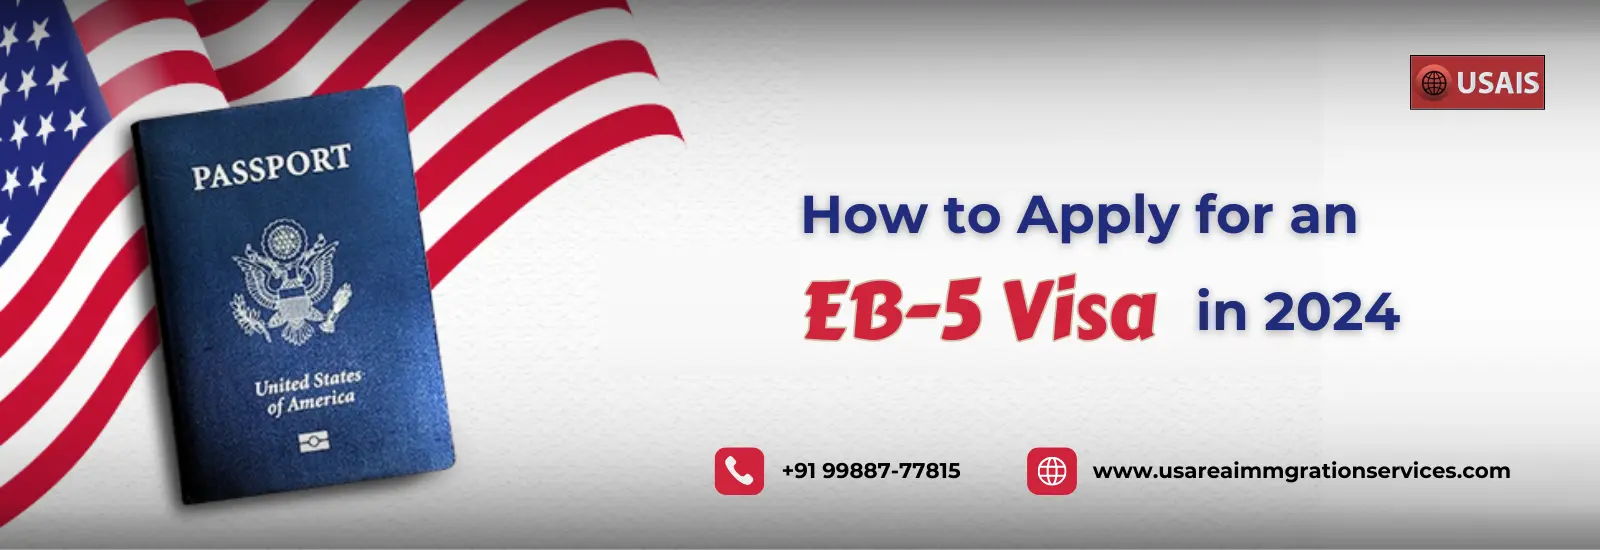 EB-5-Visa